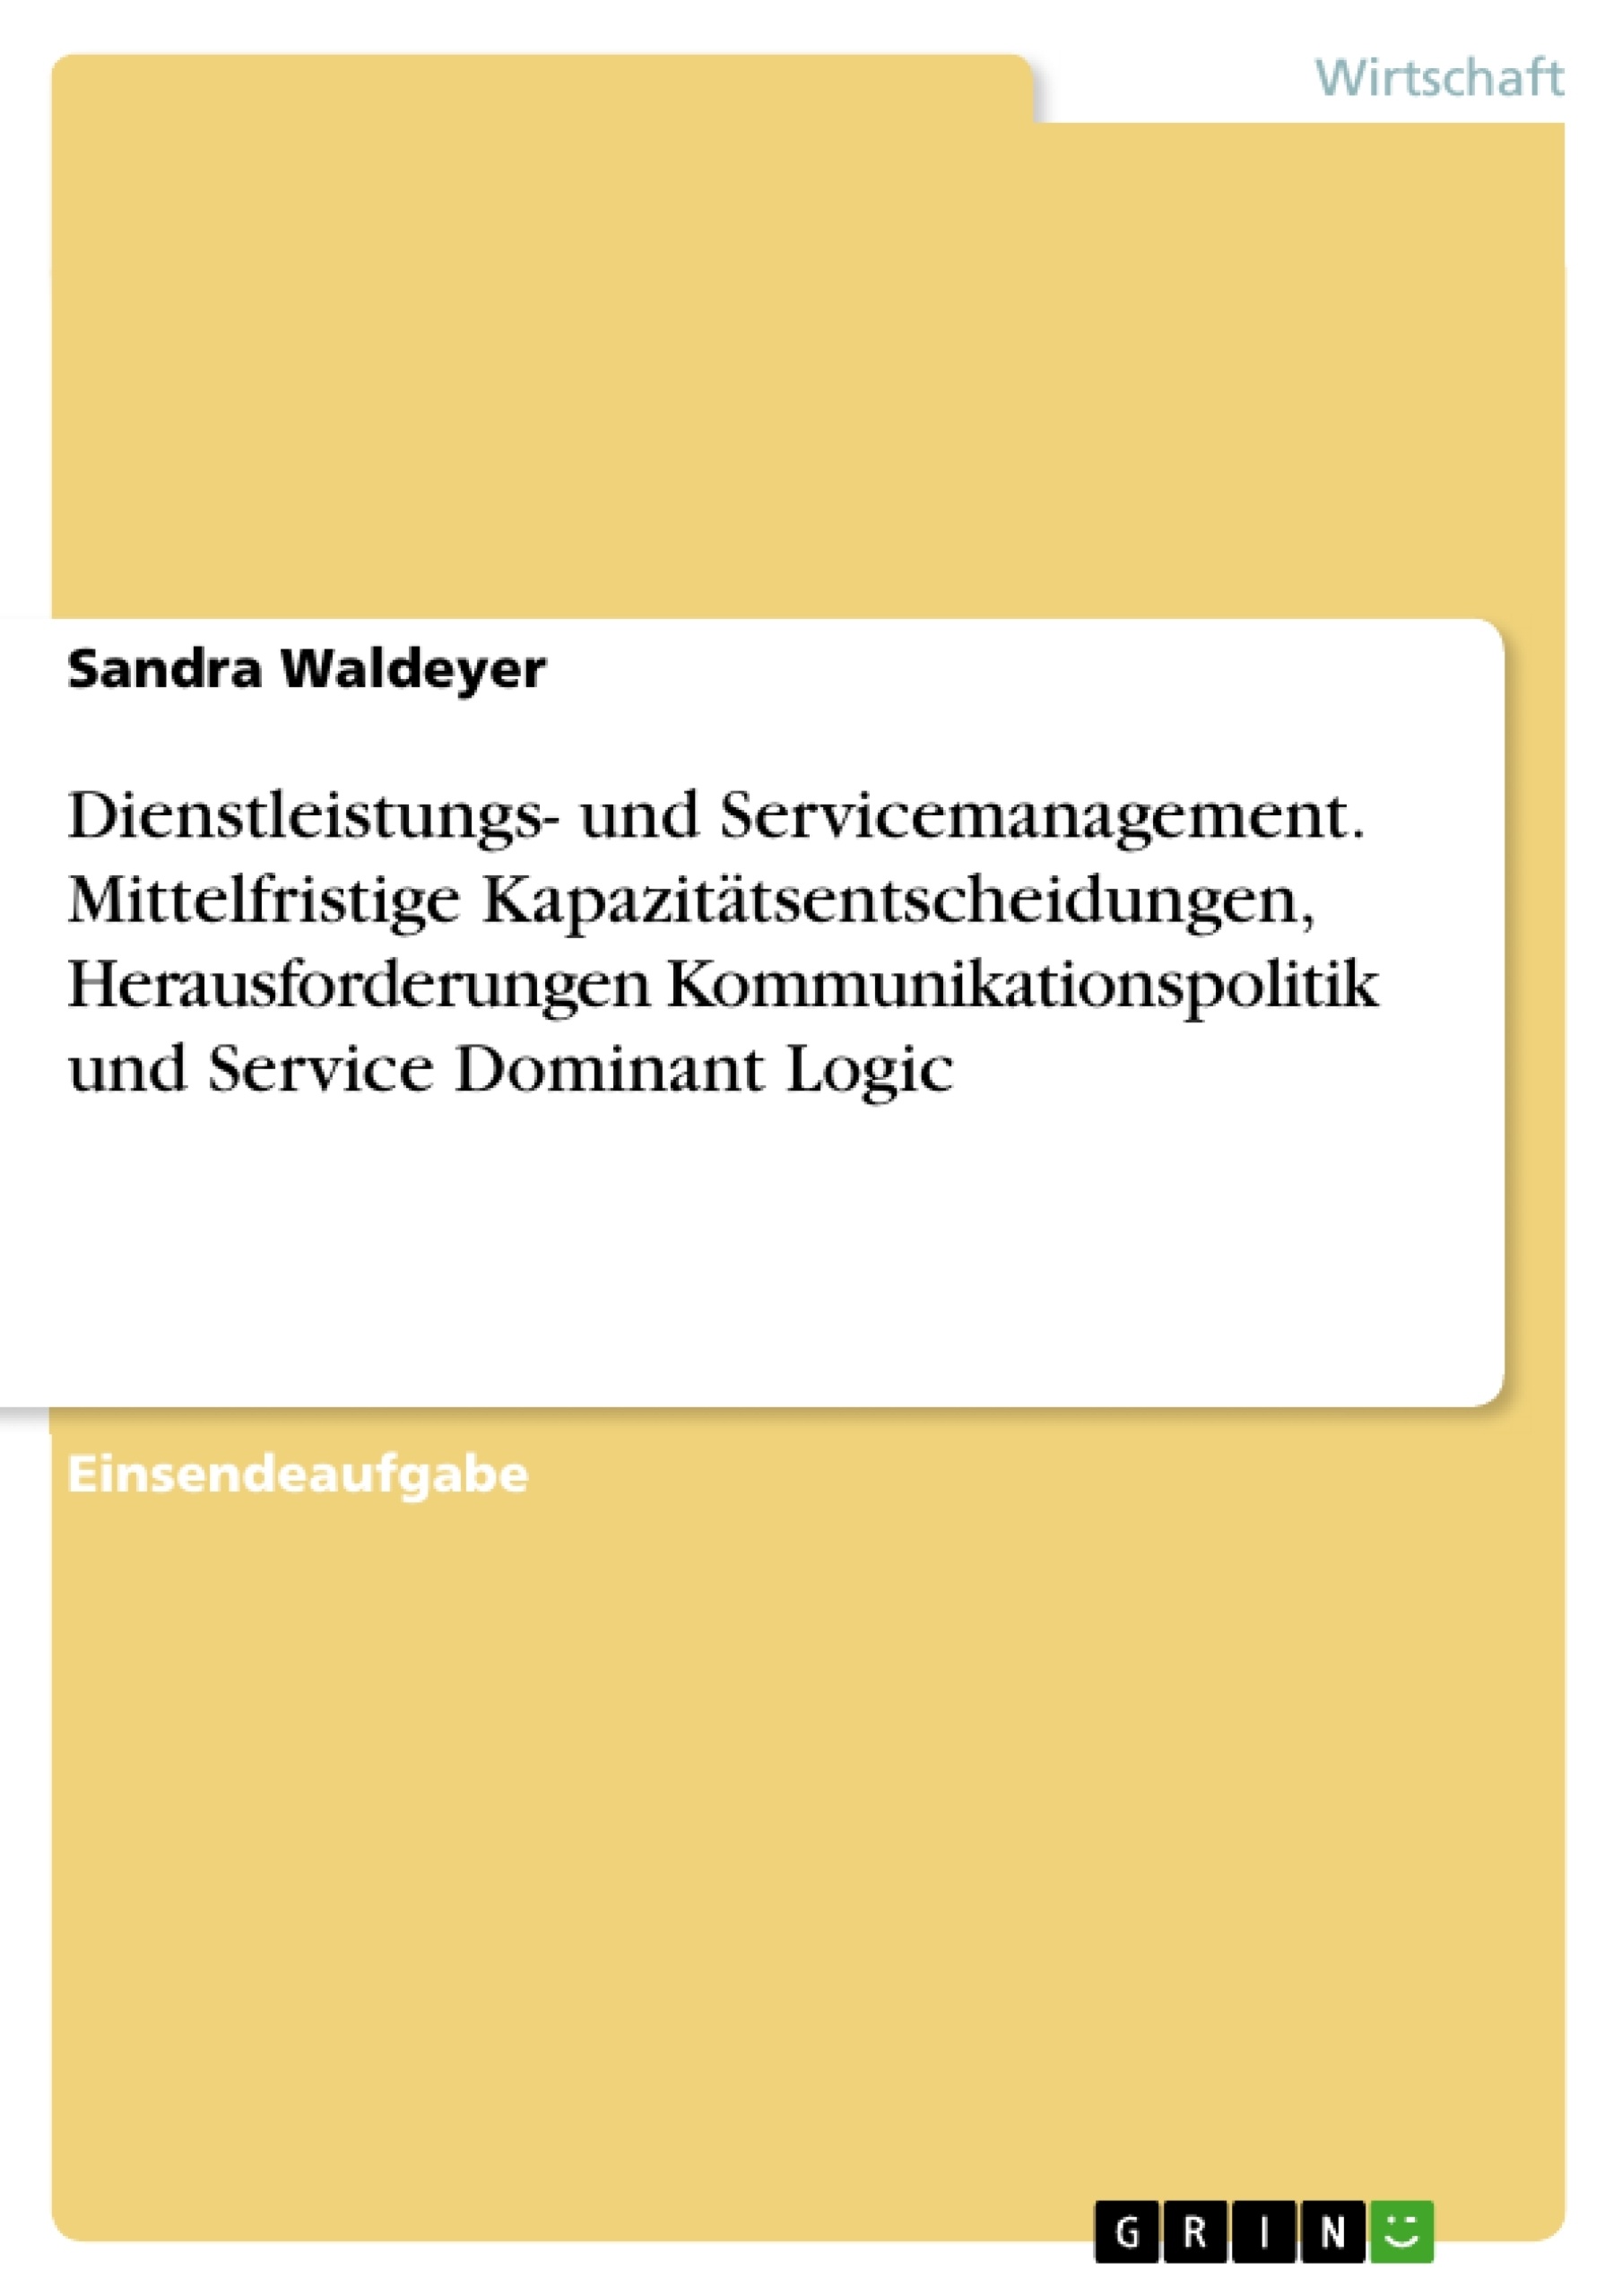 Title: Dienstleistungs- und Servicemanagement. Mittelfristige Kapazitätsentscheidungen, Herausforderungen Kommunikationspolitik und Service Dominant Logic